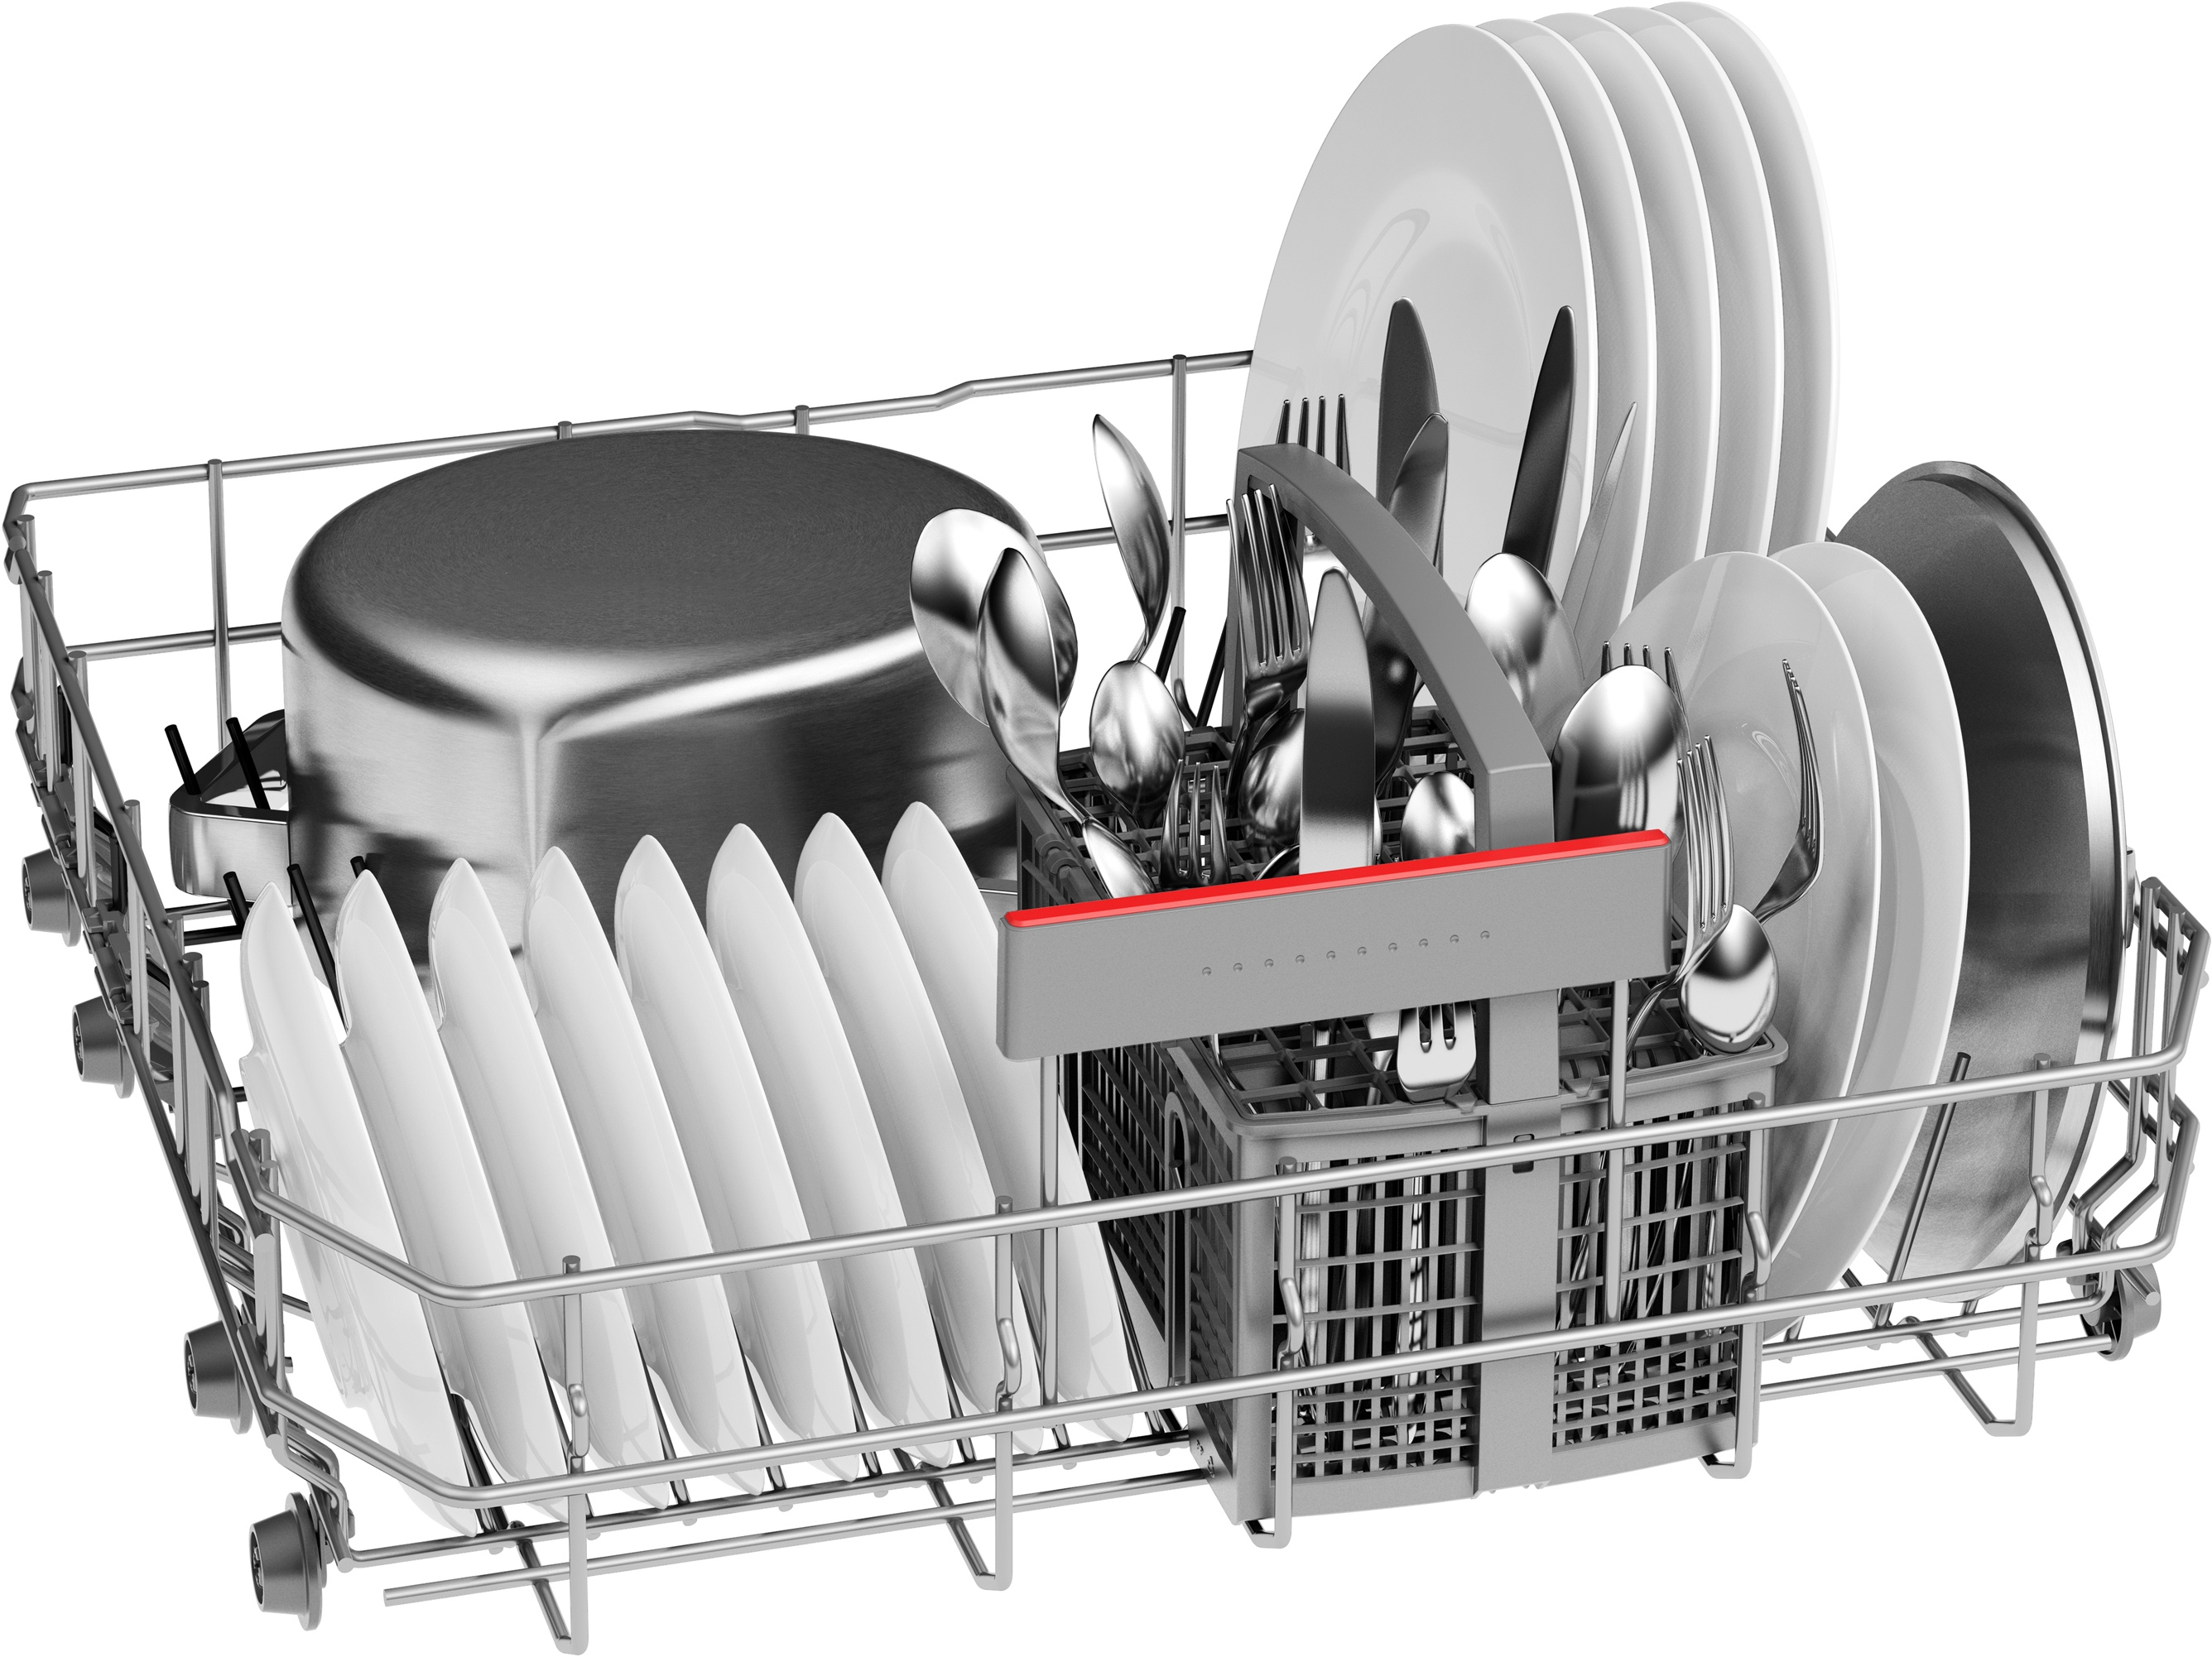 Serija 4, Samostojeća mašina za pranje sudova, 60 cm, Nerđajući čelik, SMS4HNI06E